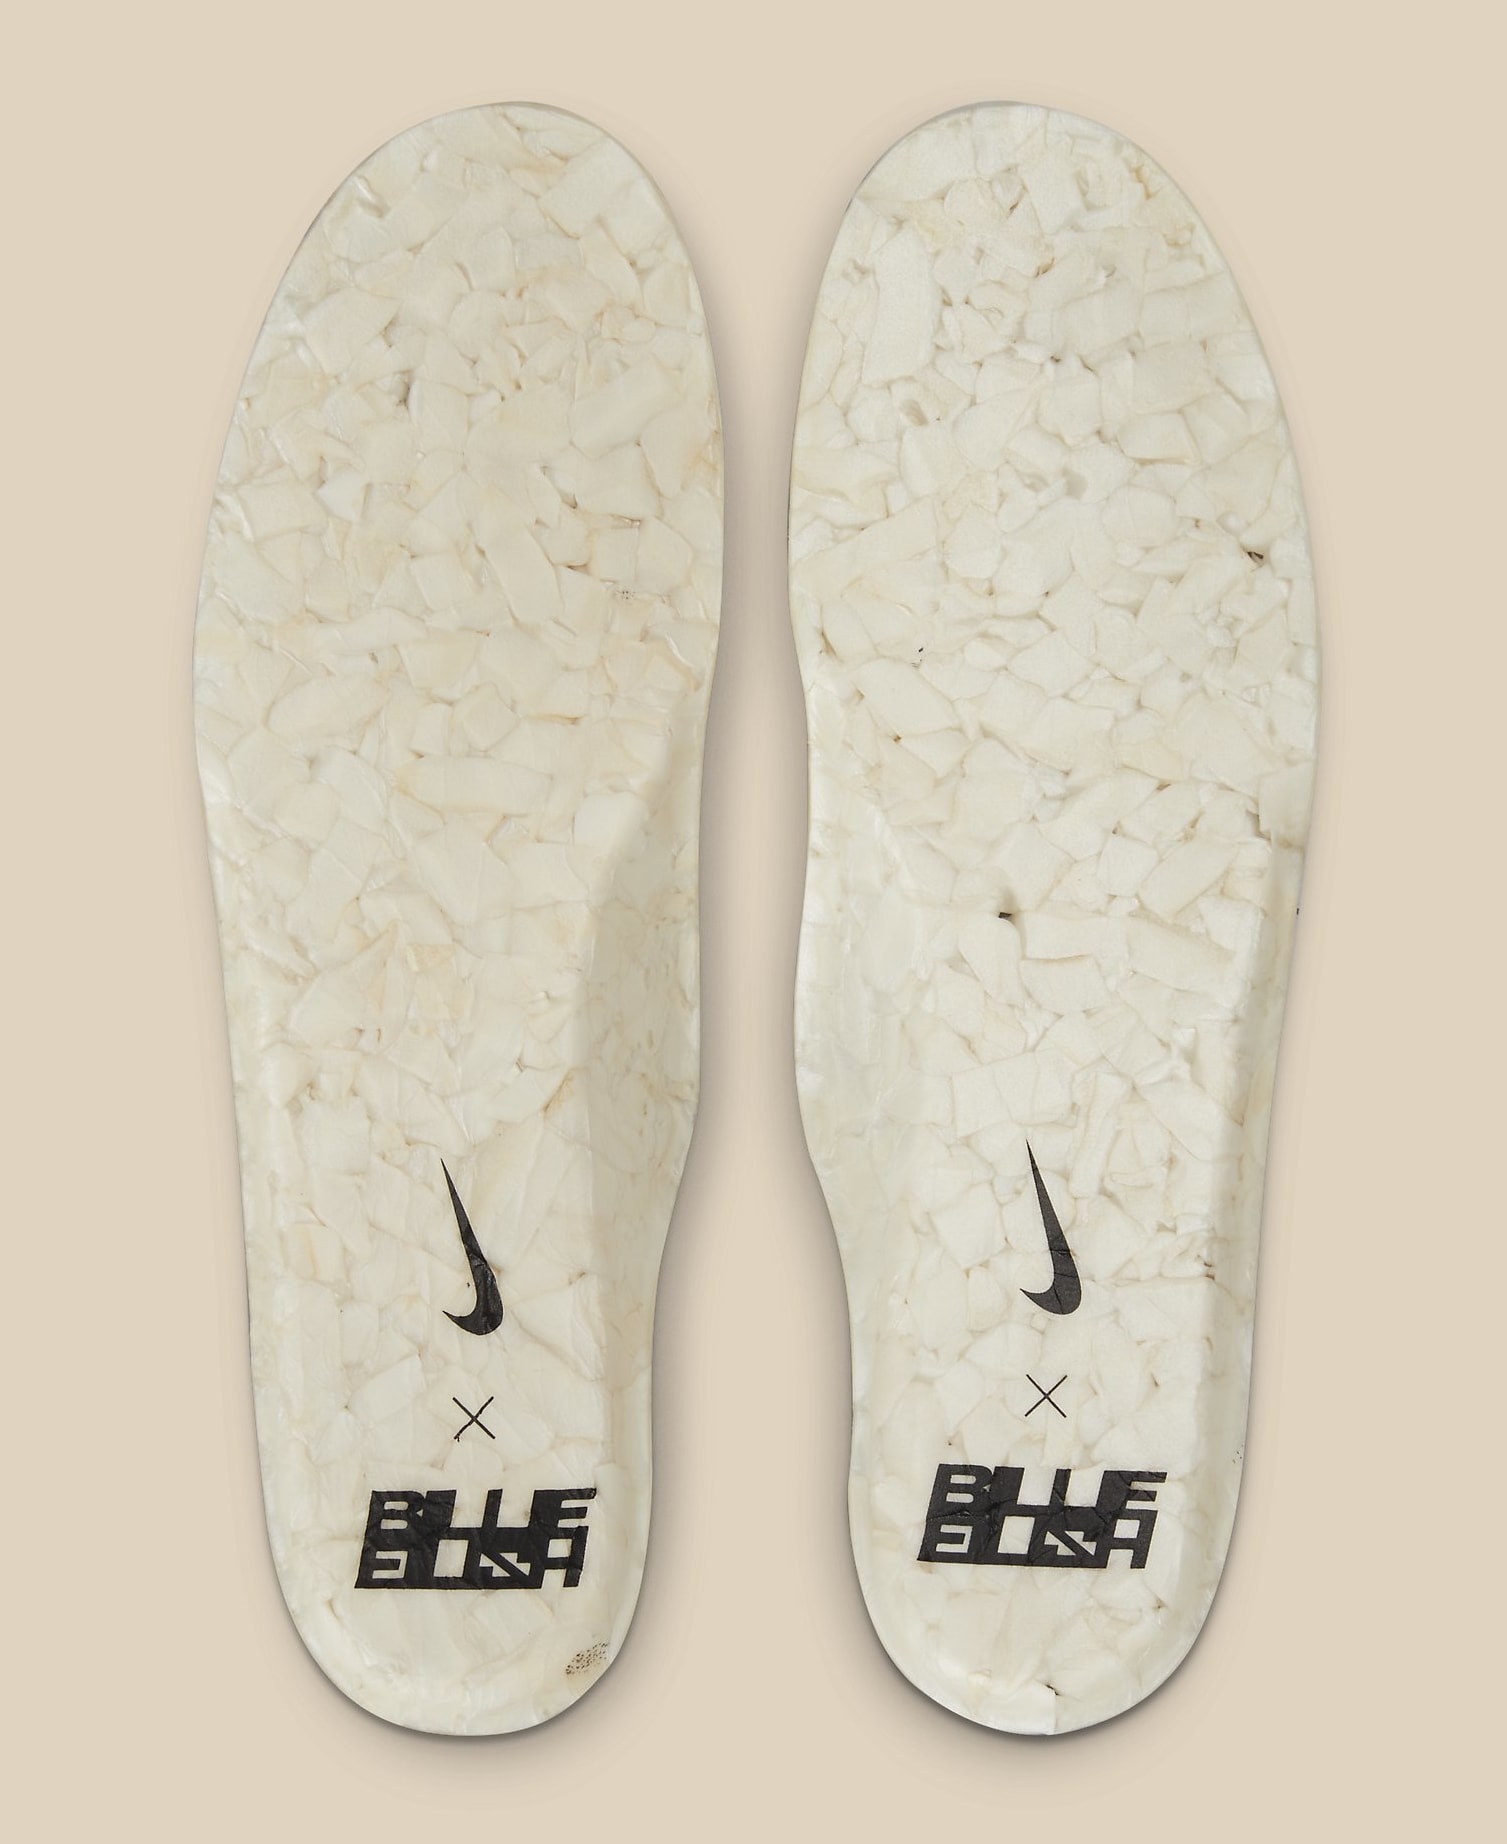 Billie Eilish x Nike Air Force 1 High 'Mushroom' DM7926 200 Insole